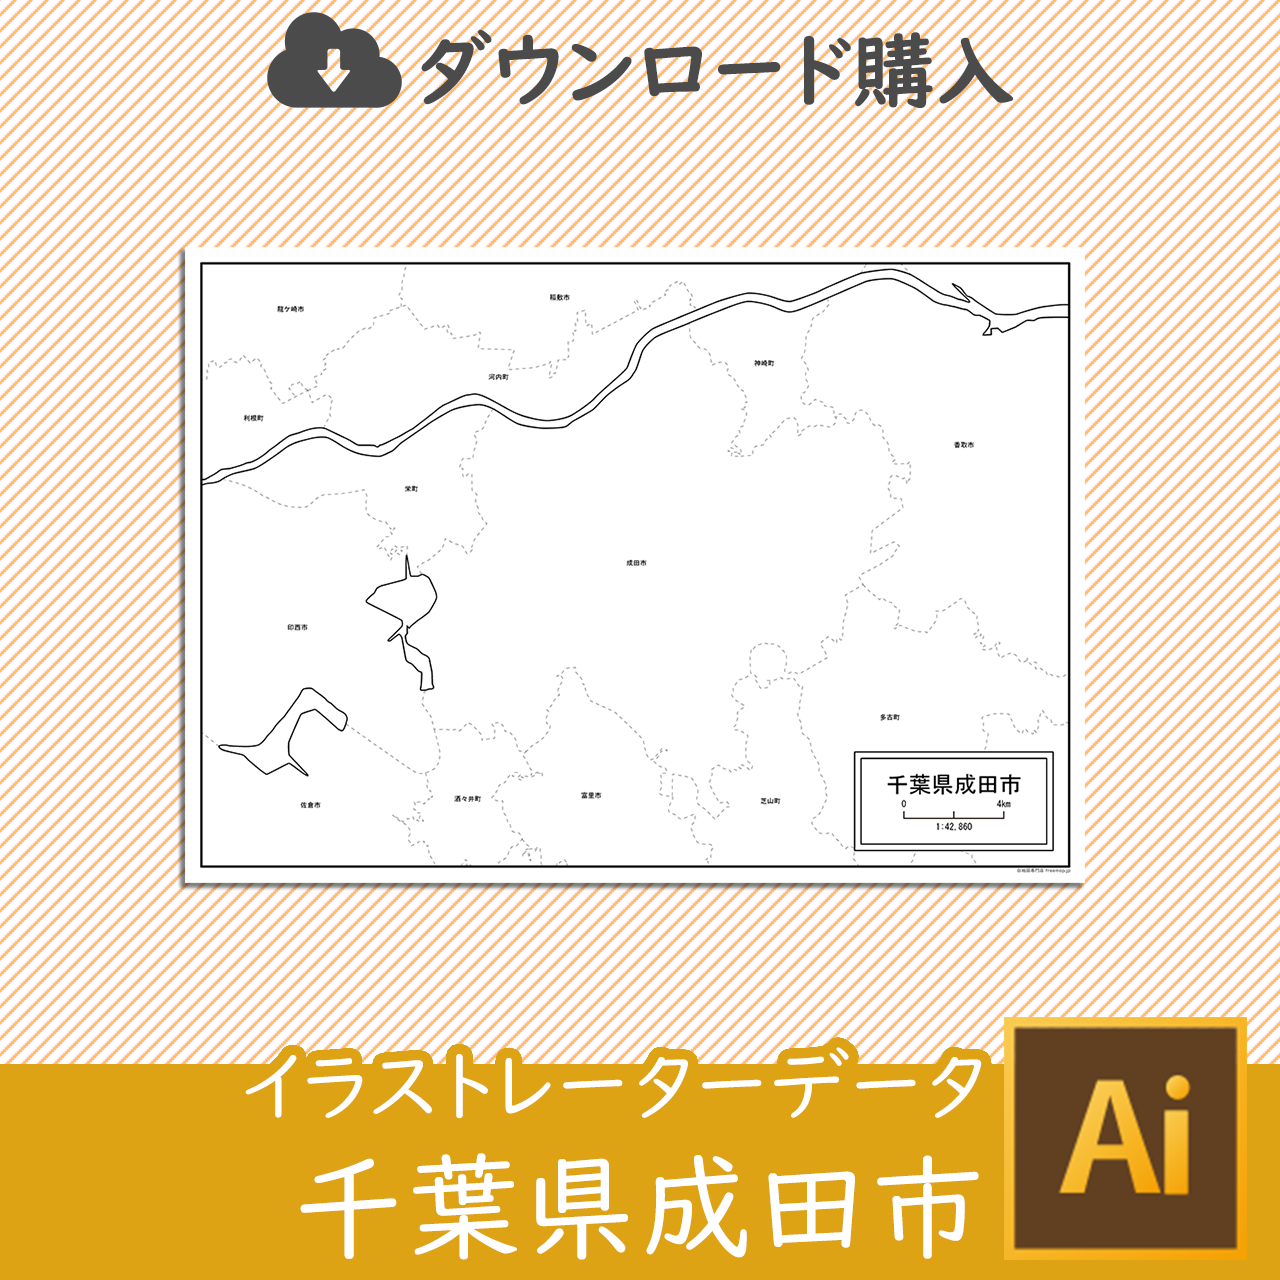 成田市のaiデータのサムネイル画像